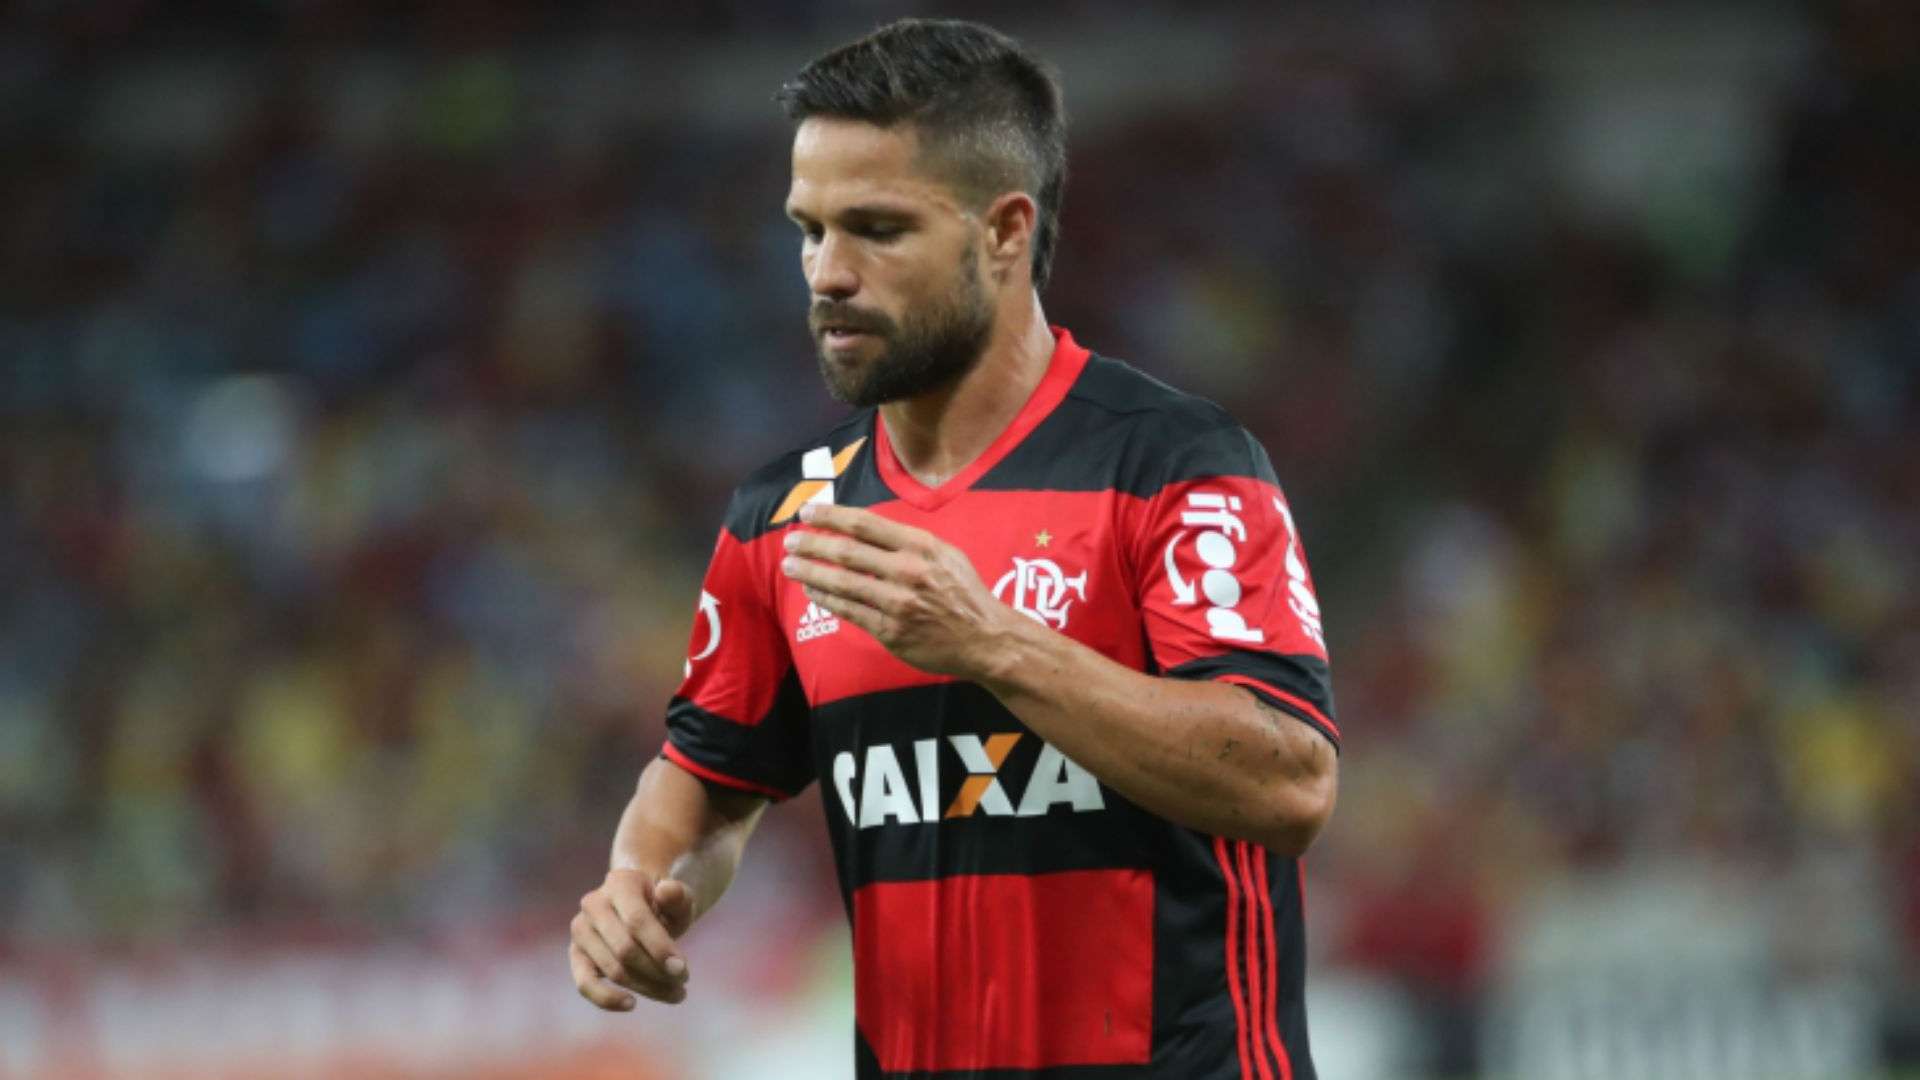 Diego Ribas Flamengo Coritiba Brasileiro 21 11 2016